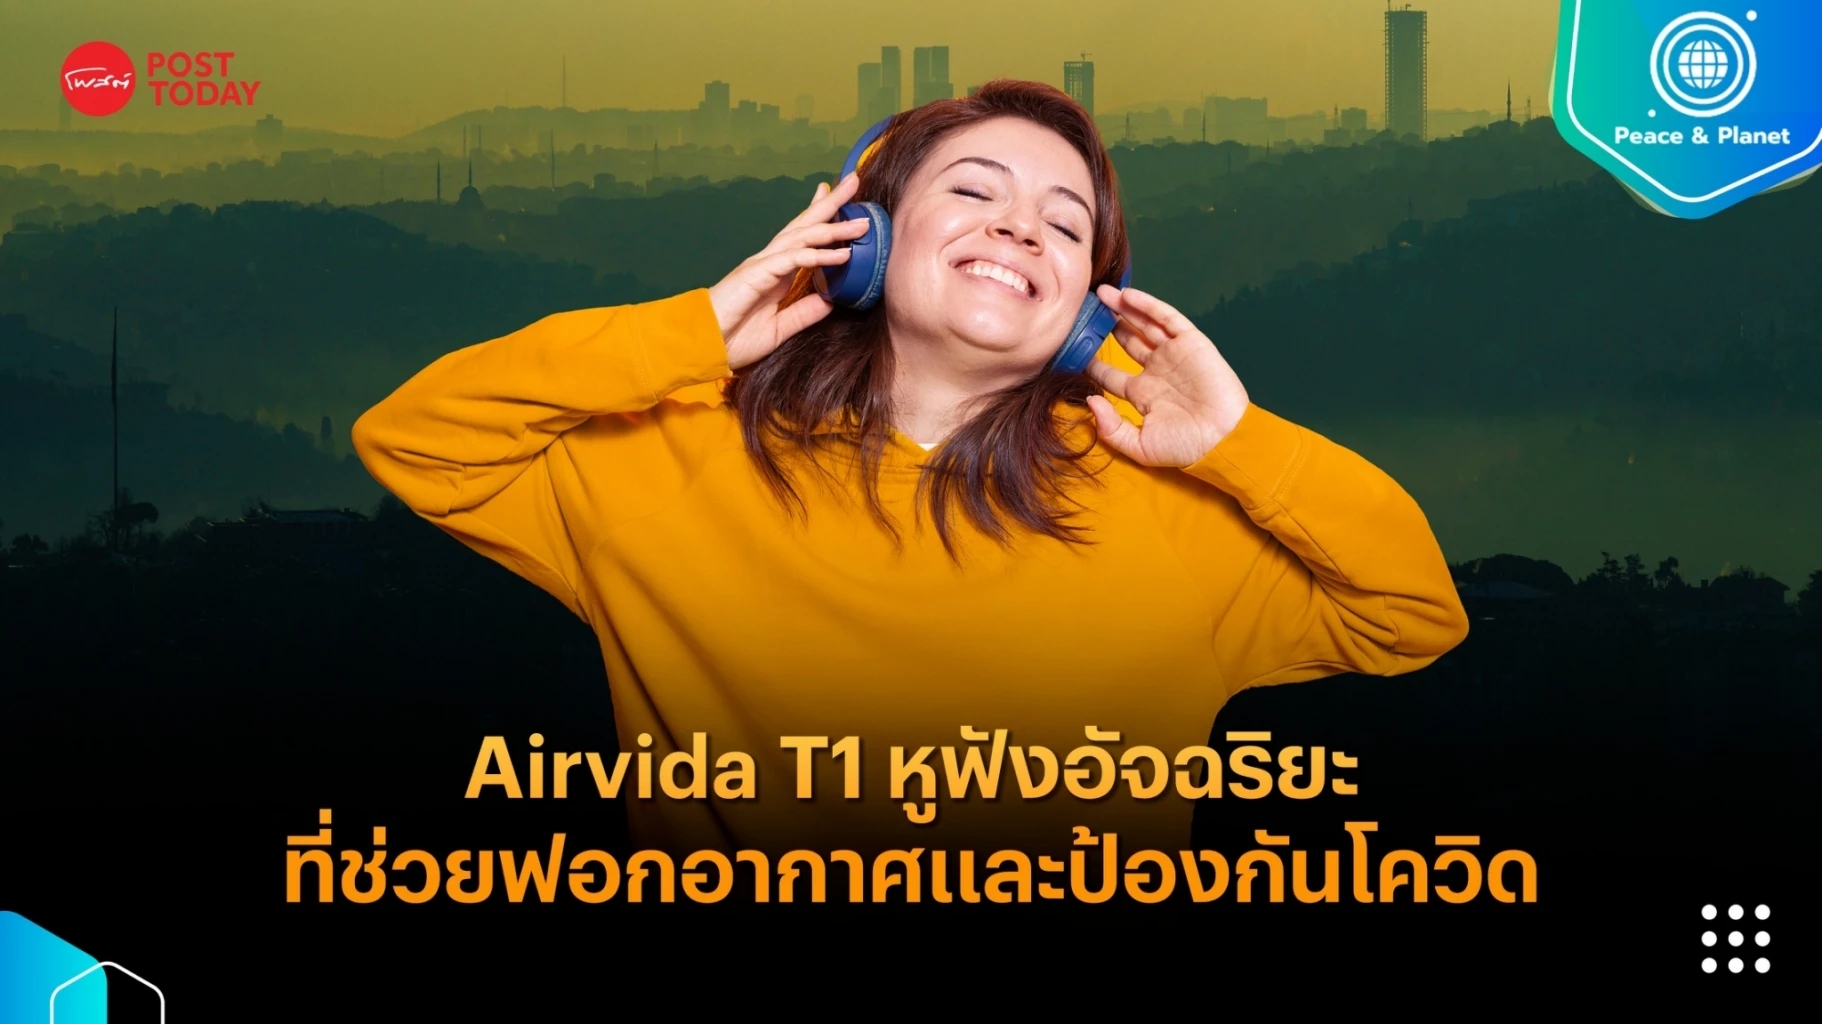 Airvida T1 หูฟังอัจฉริยะที่มีคุณสมบัติในการฟอกอากาศและป้องกันโควิด